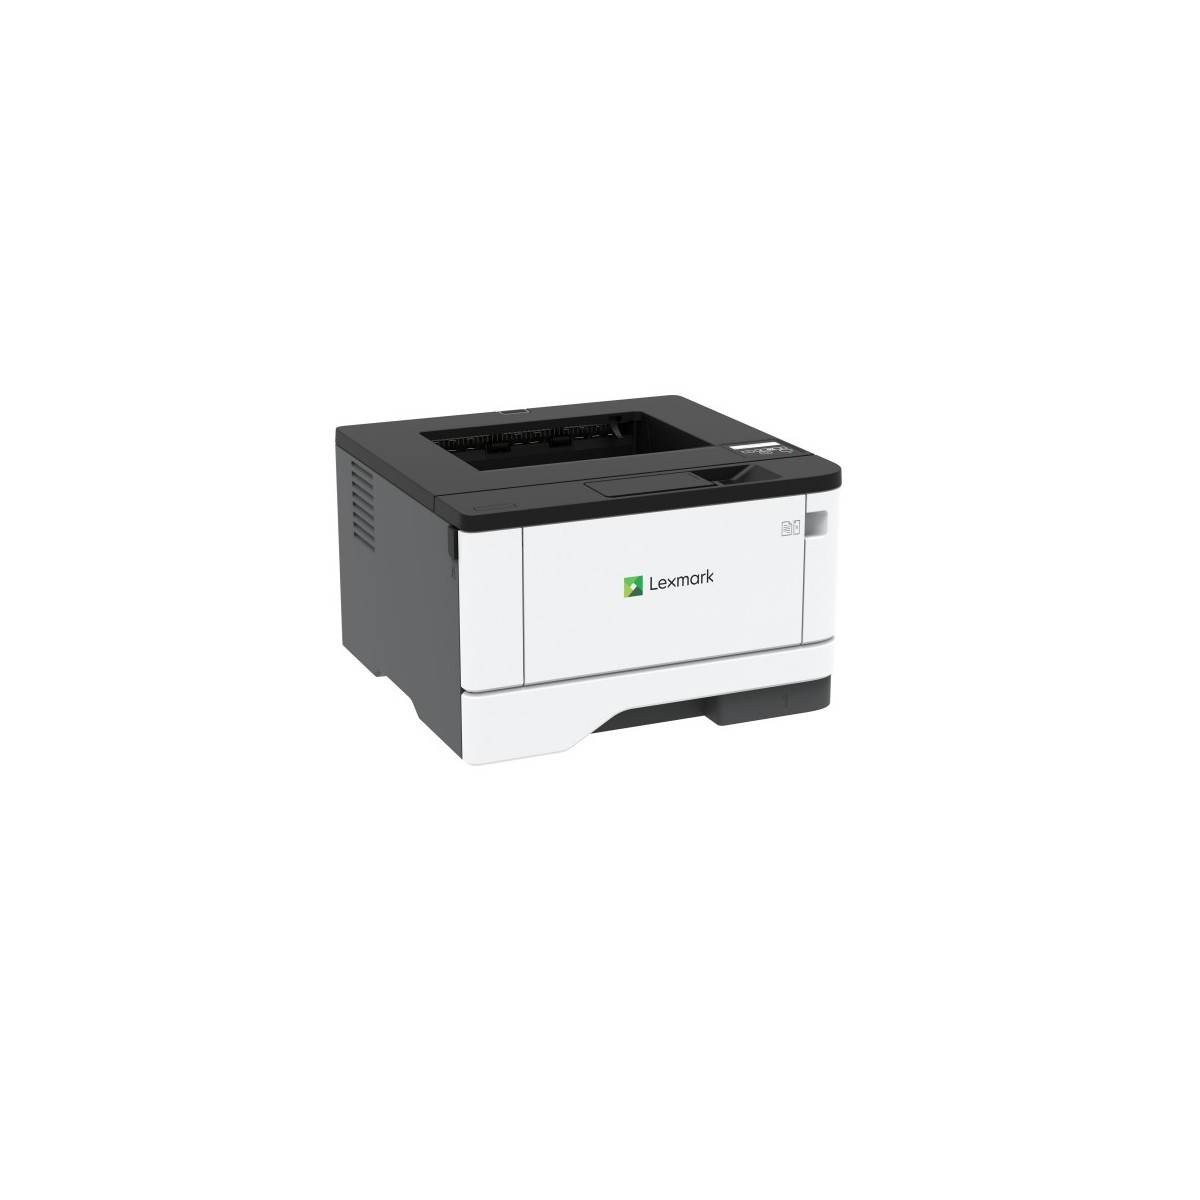 Lexmark M1342 Laserprinter Mono SF 24 ppm Wi-Fi en duplex prints - Laser/Led - 24 ppm